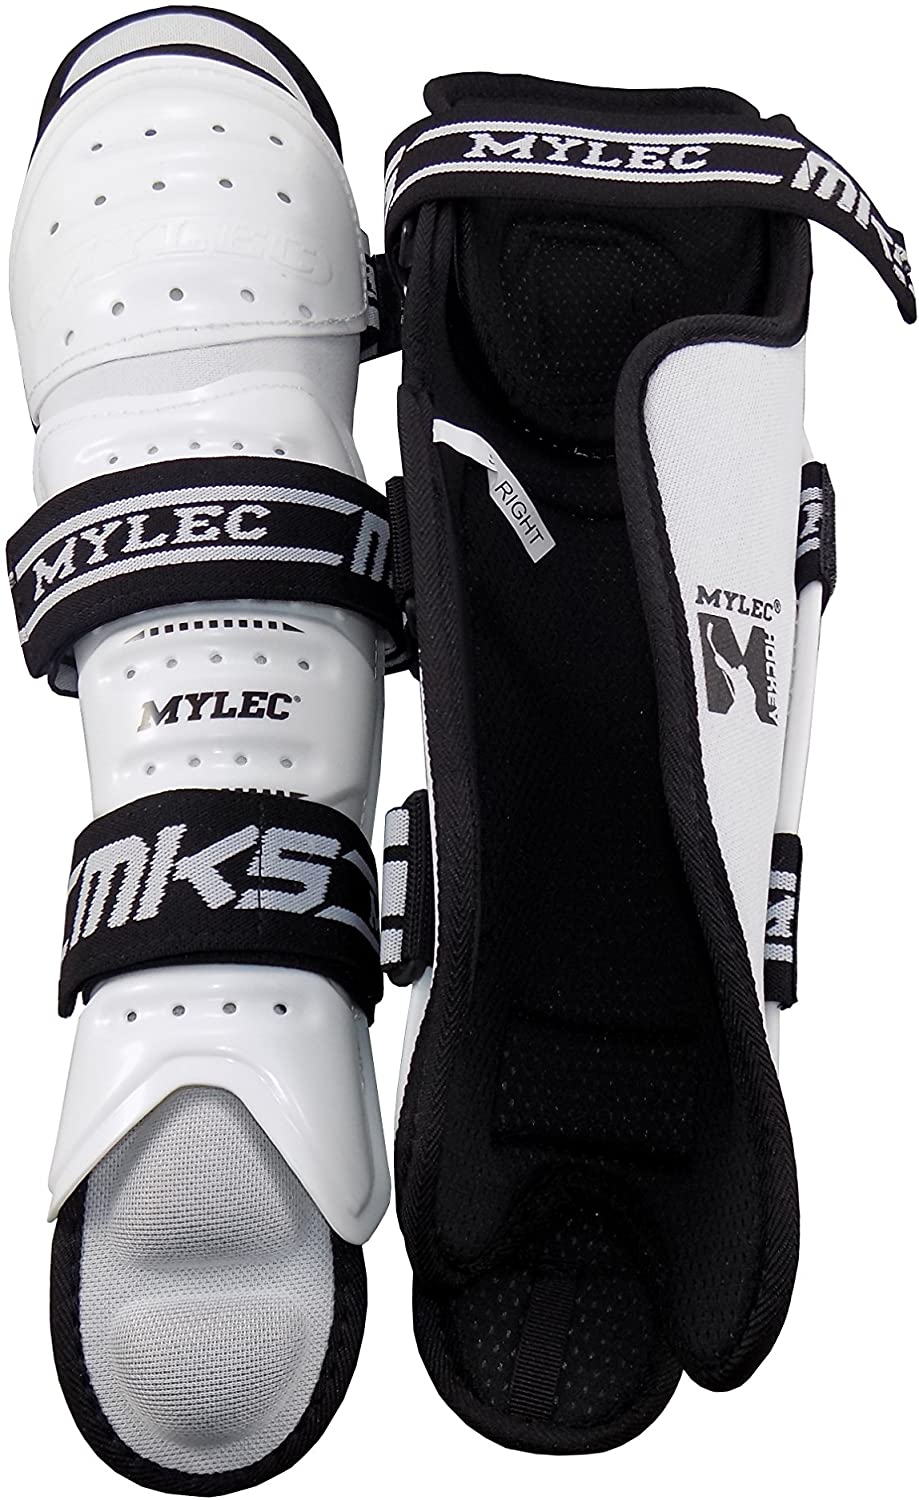 Mylec MK5 15" Pro Roller Hockey, Dek Hockey, Street Hockey Shinguards/Kneepads - White - Pro-Distributing